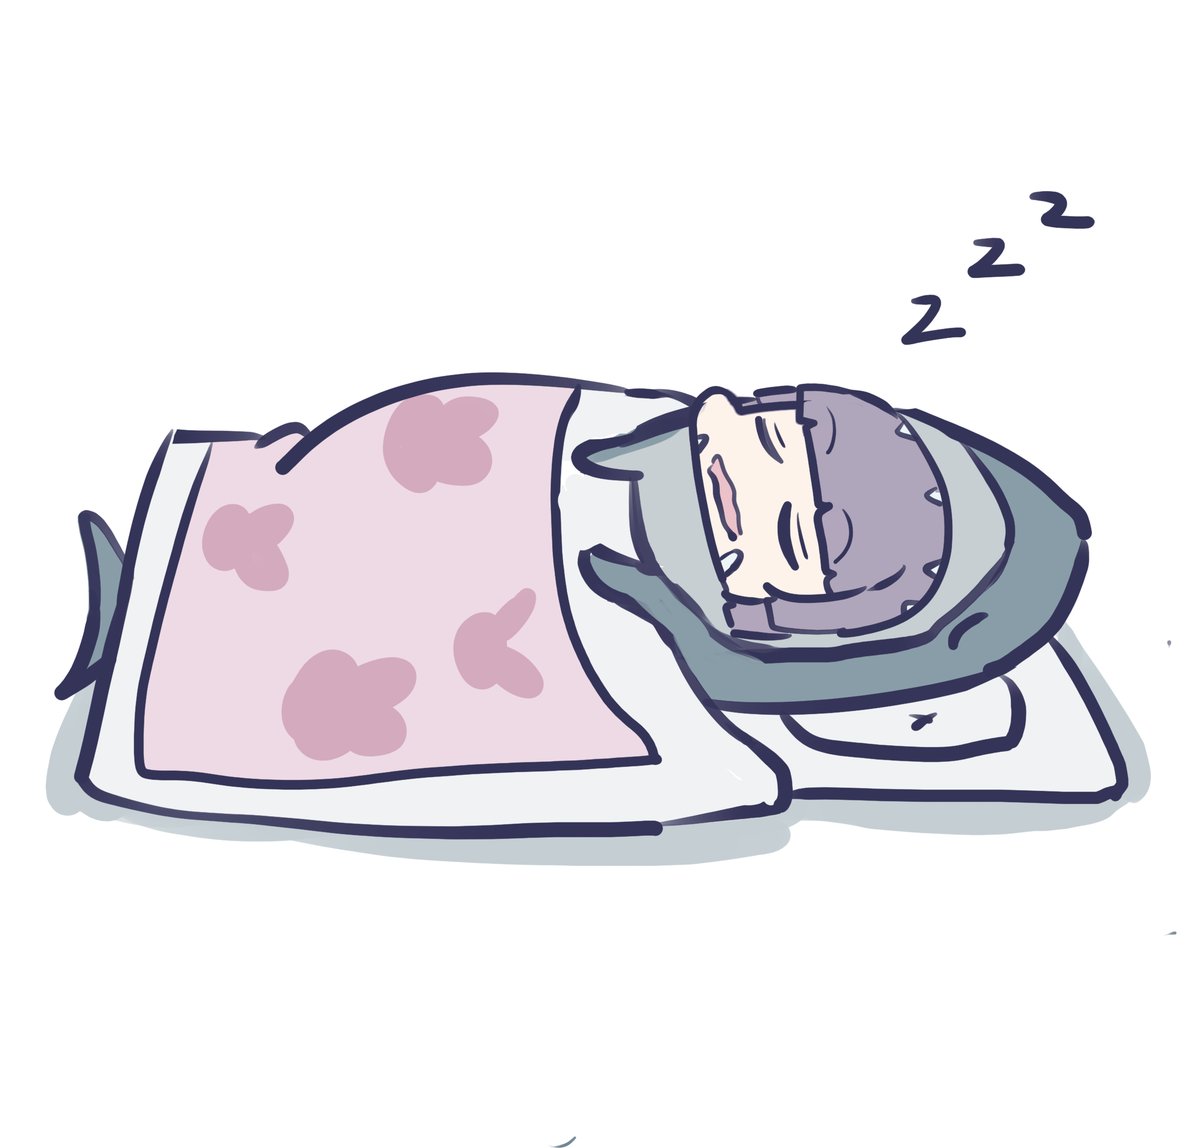 1girl zzz solo sleeping white background futon closed eyes  illustration images